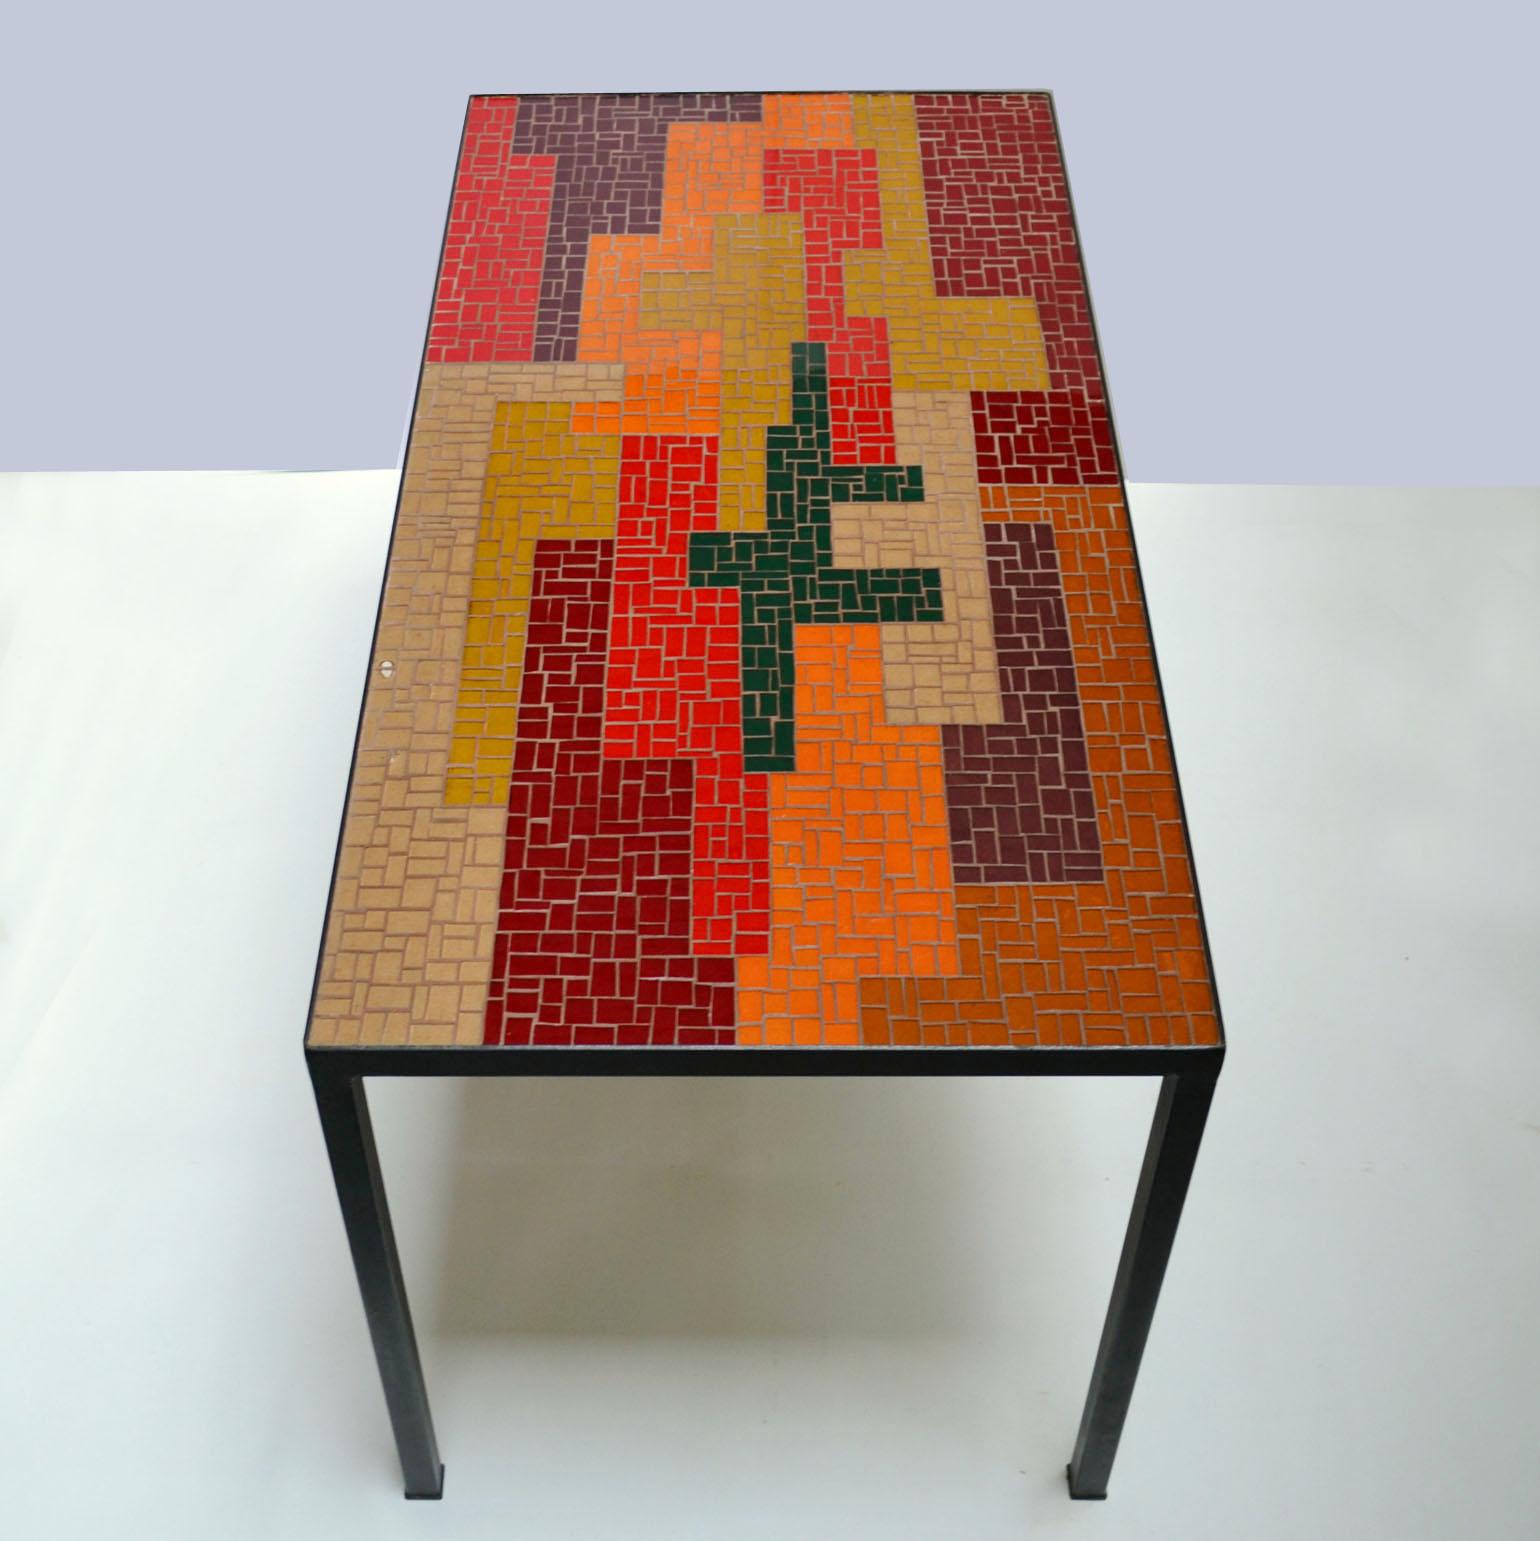 Mosaik-Couchtisch mit starkem abstraktem Design und einer ausgewogenen Farbpalette in Schwarz, Rot, Orange, Lachs und Ocker. Rechteckige und quadratische Glasstücke bilden ein auffälliges Muster in horizontaler und vertikaler Richtung. Der elegante